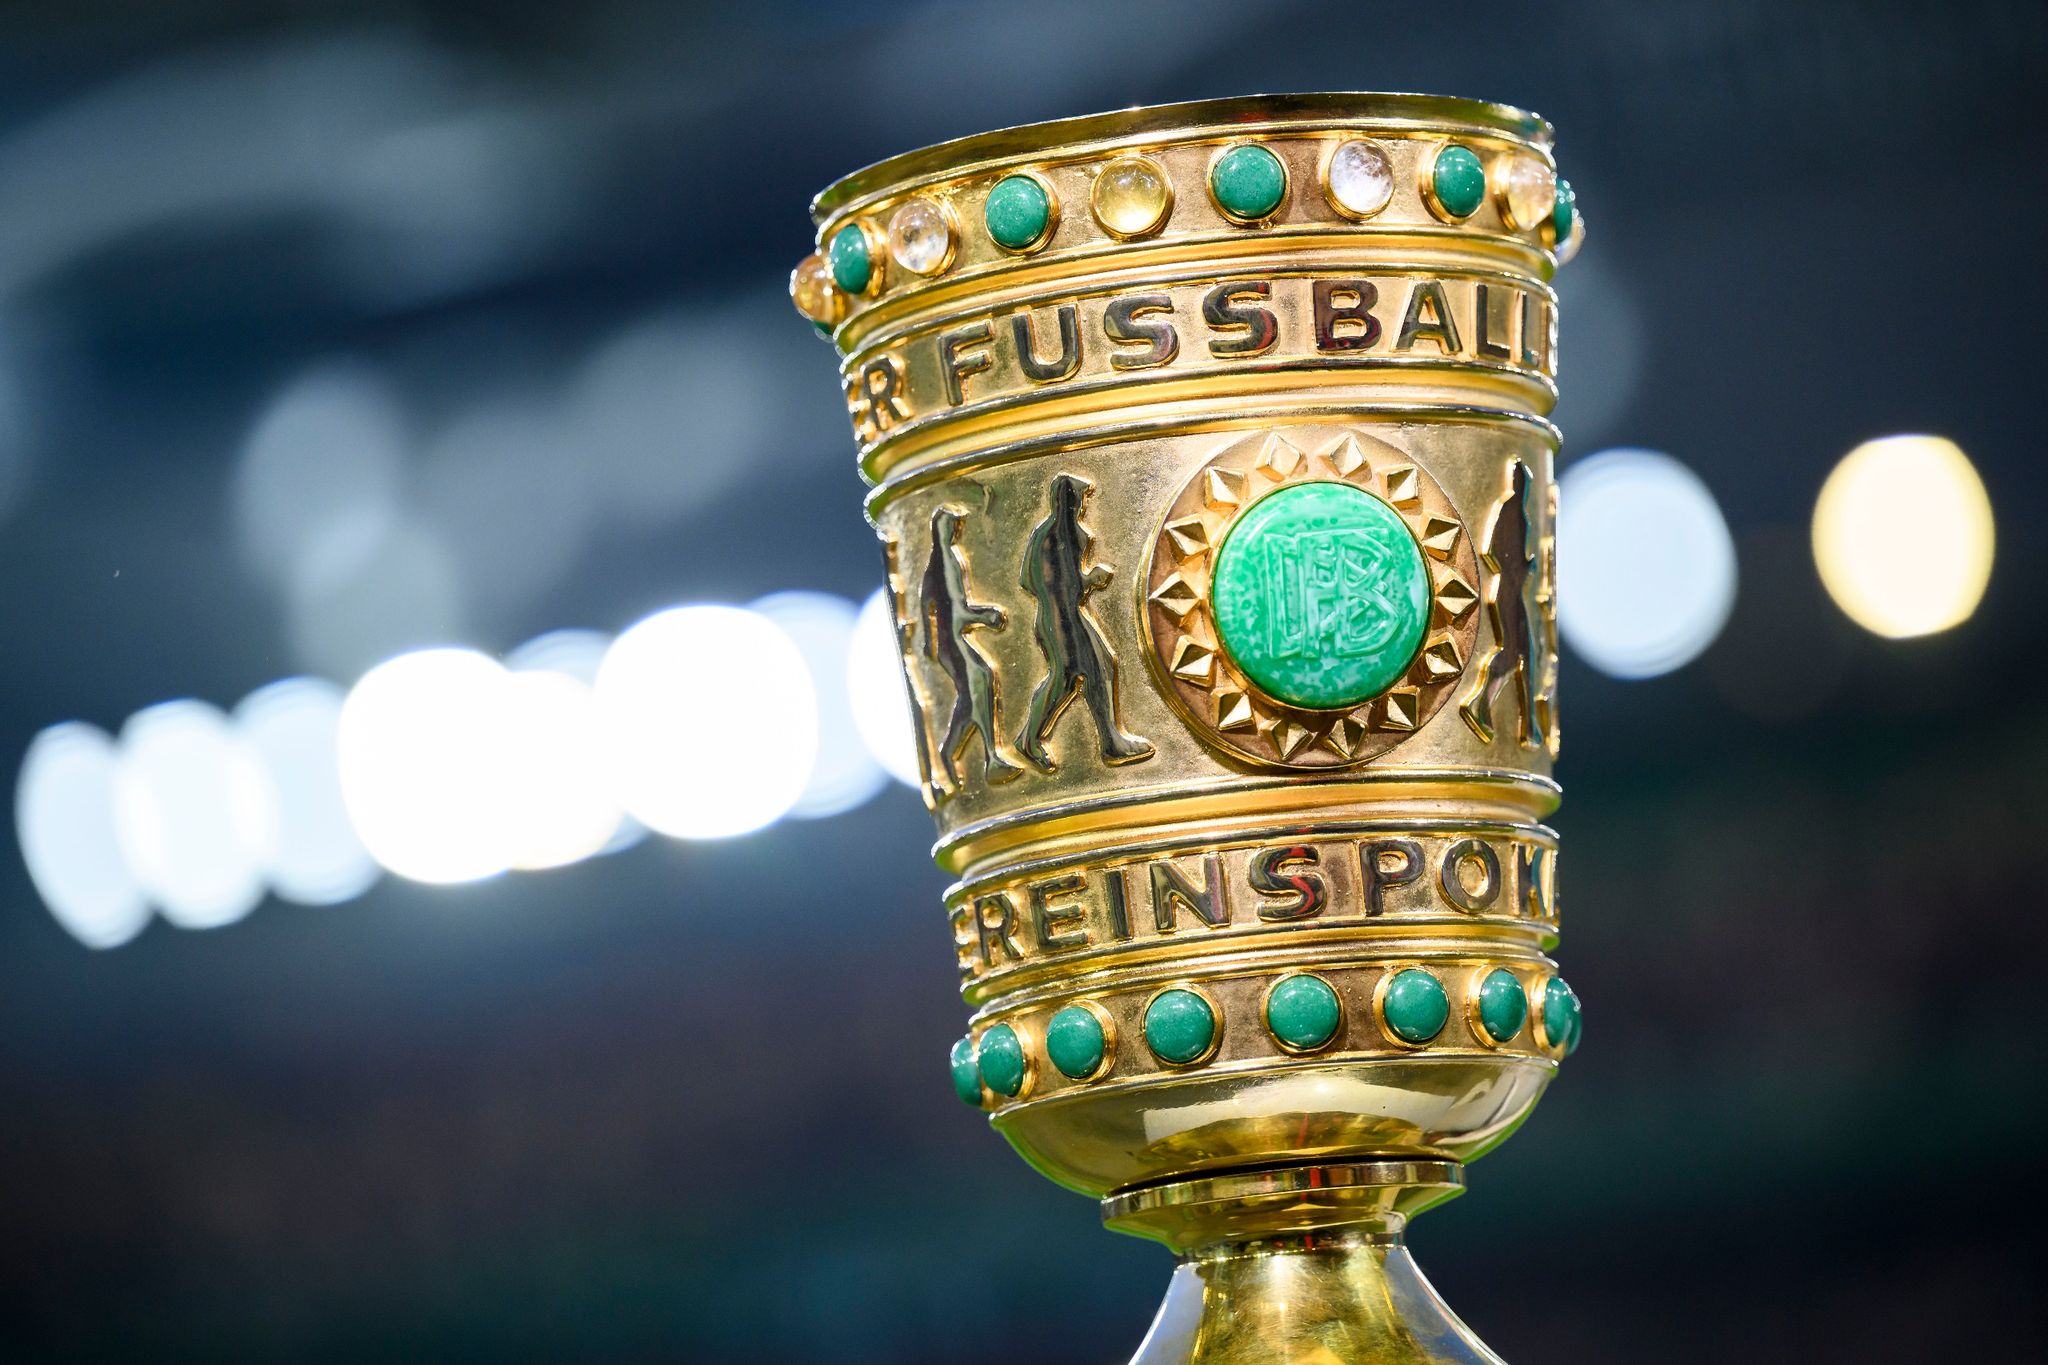 DFB-Pokal Prämien und TV-Zeiten Radio Regenbogen